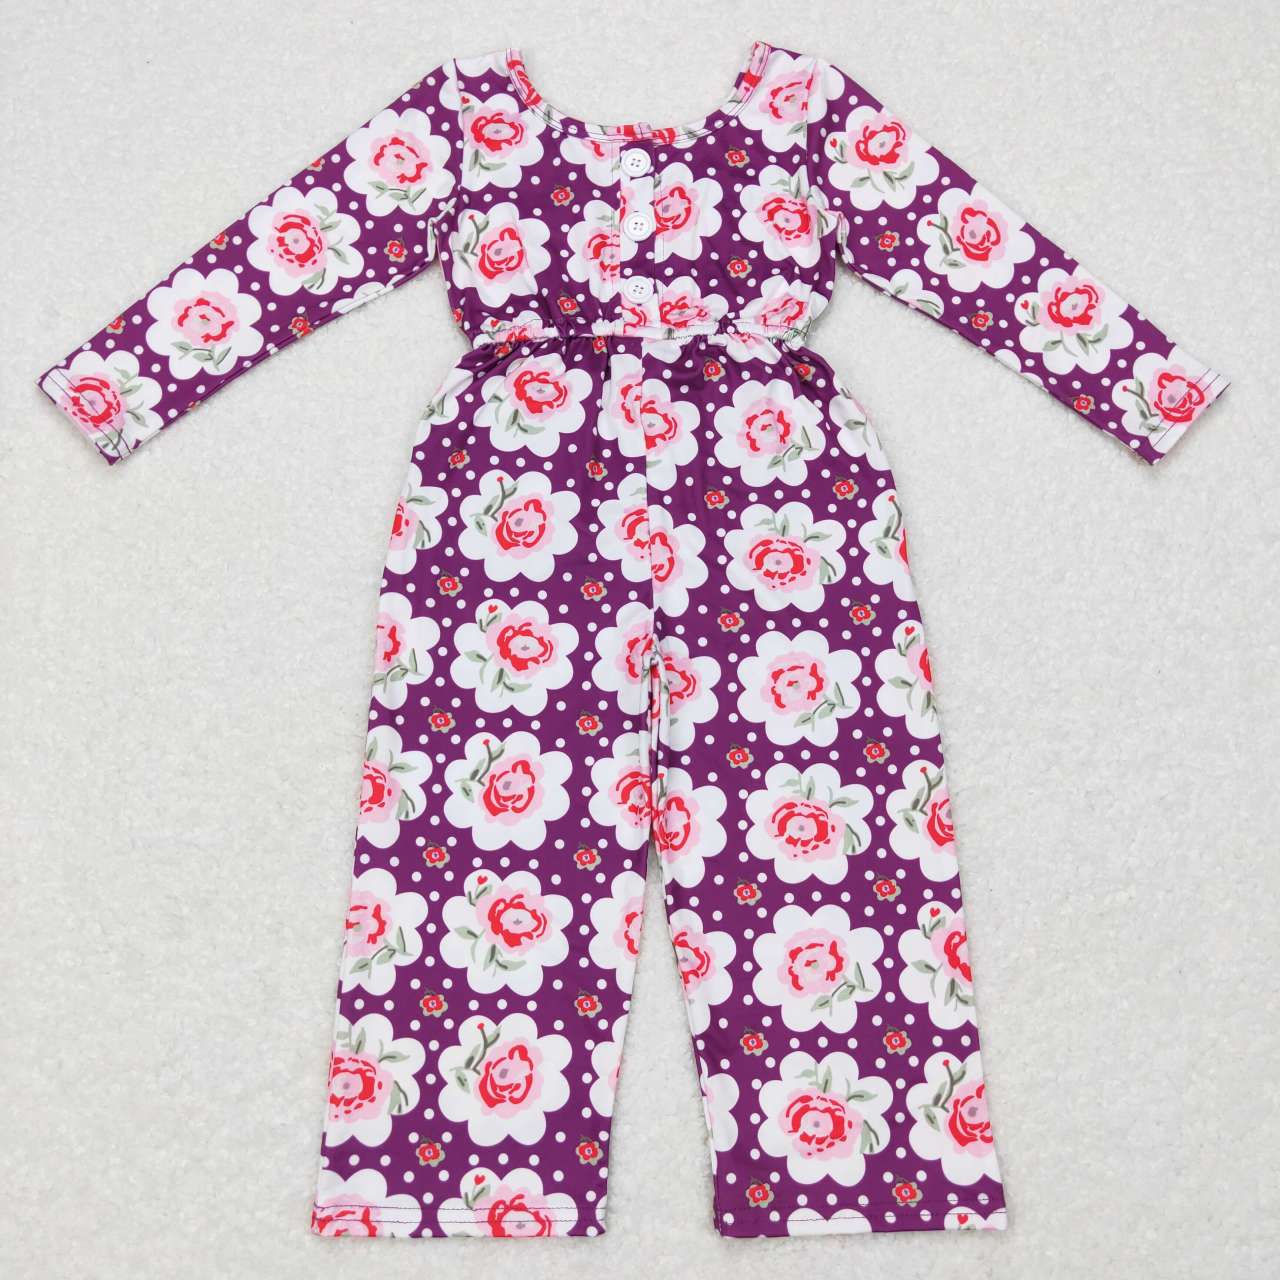 LR0716 Floral polka dot purple long-sleeved jumpsuit